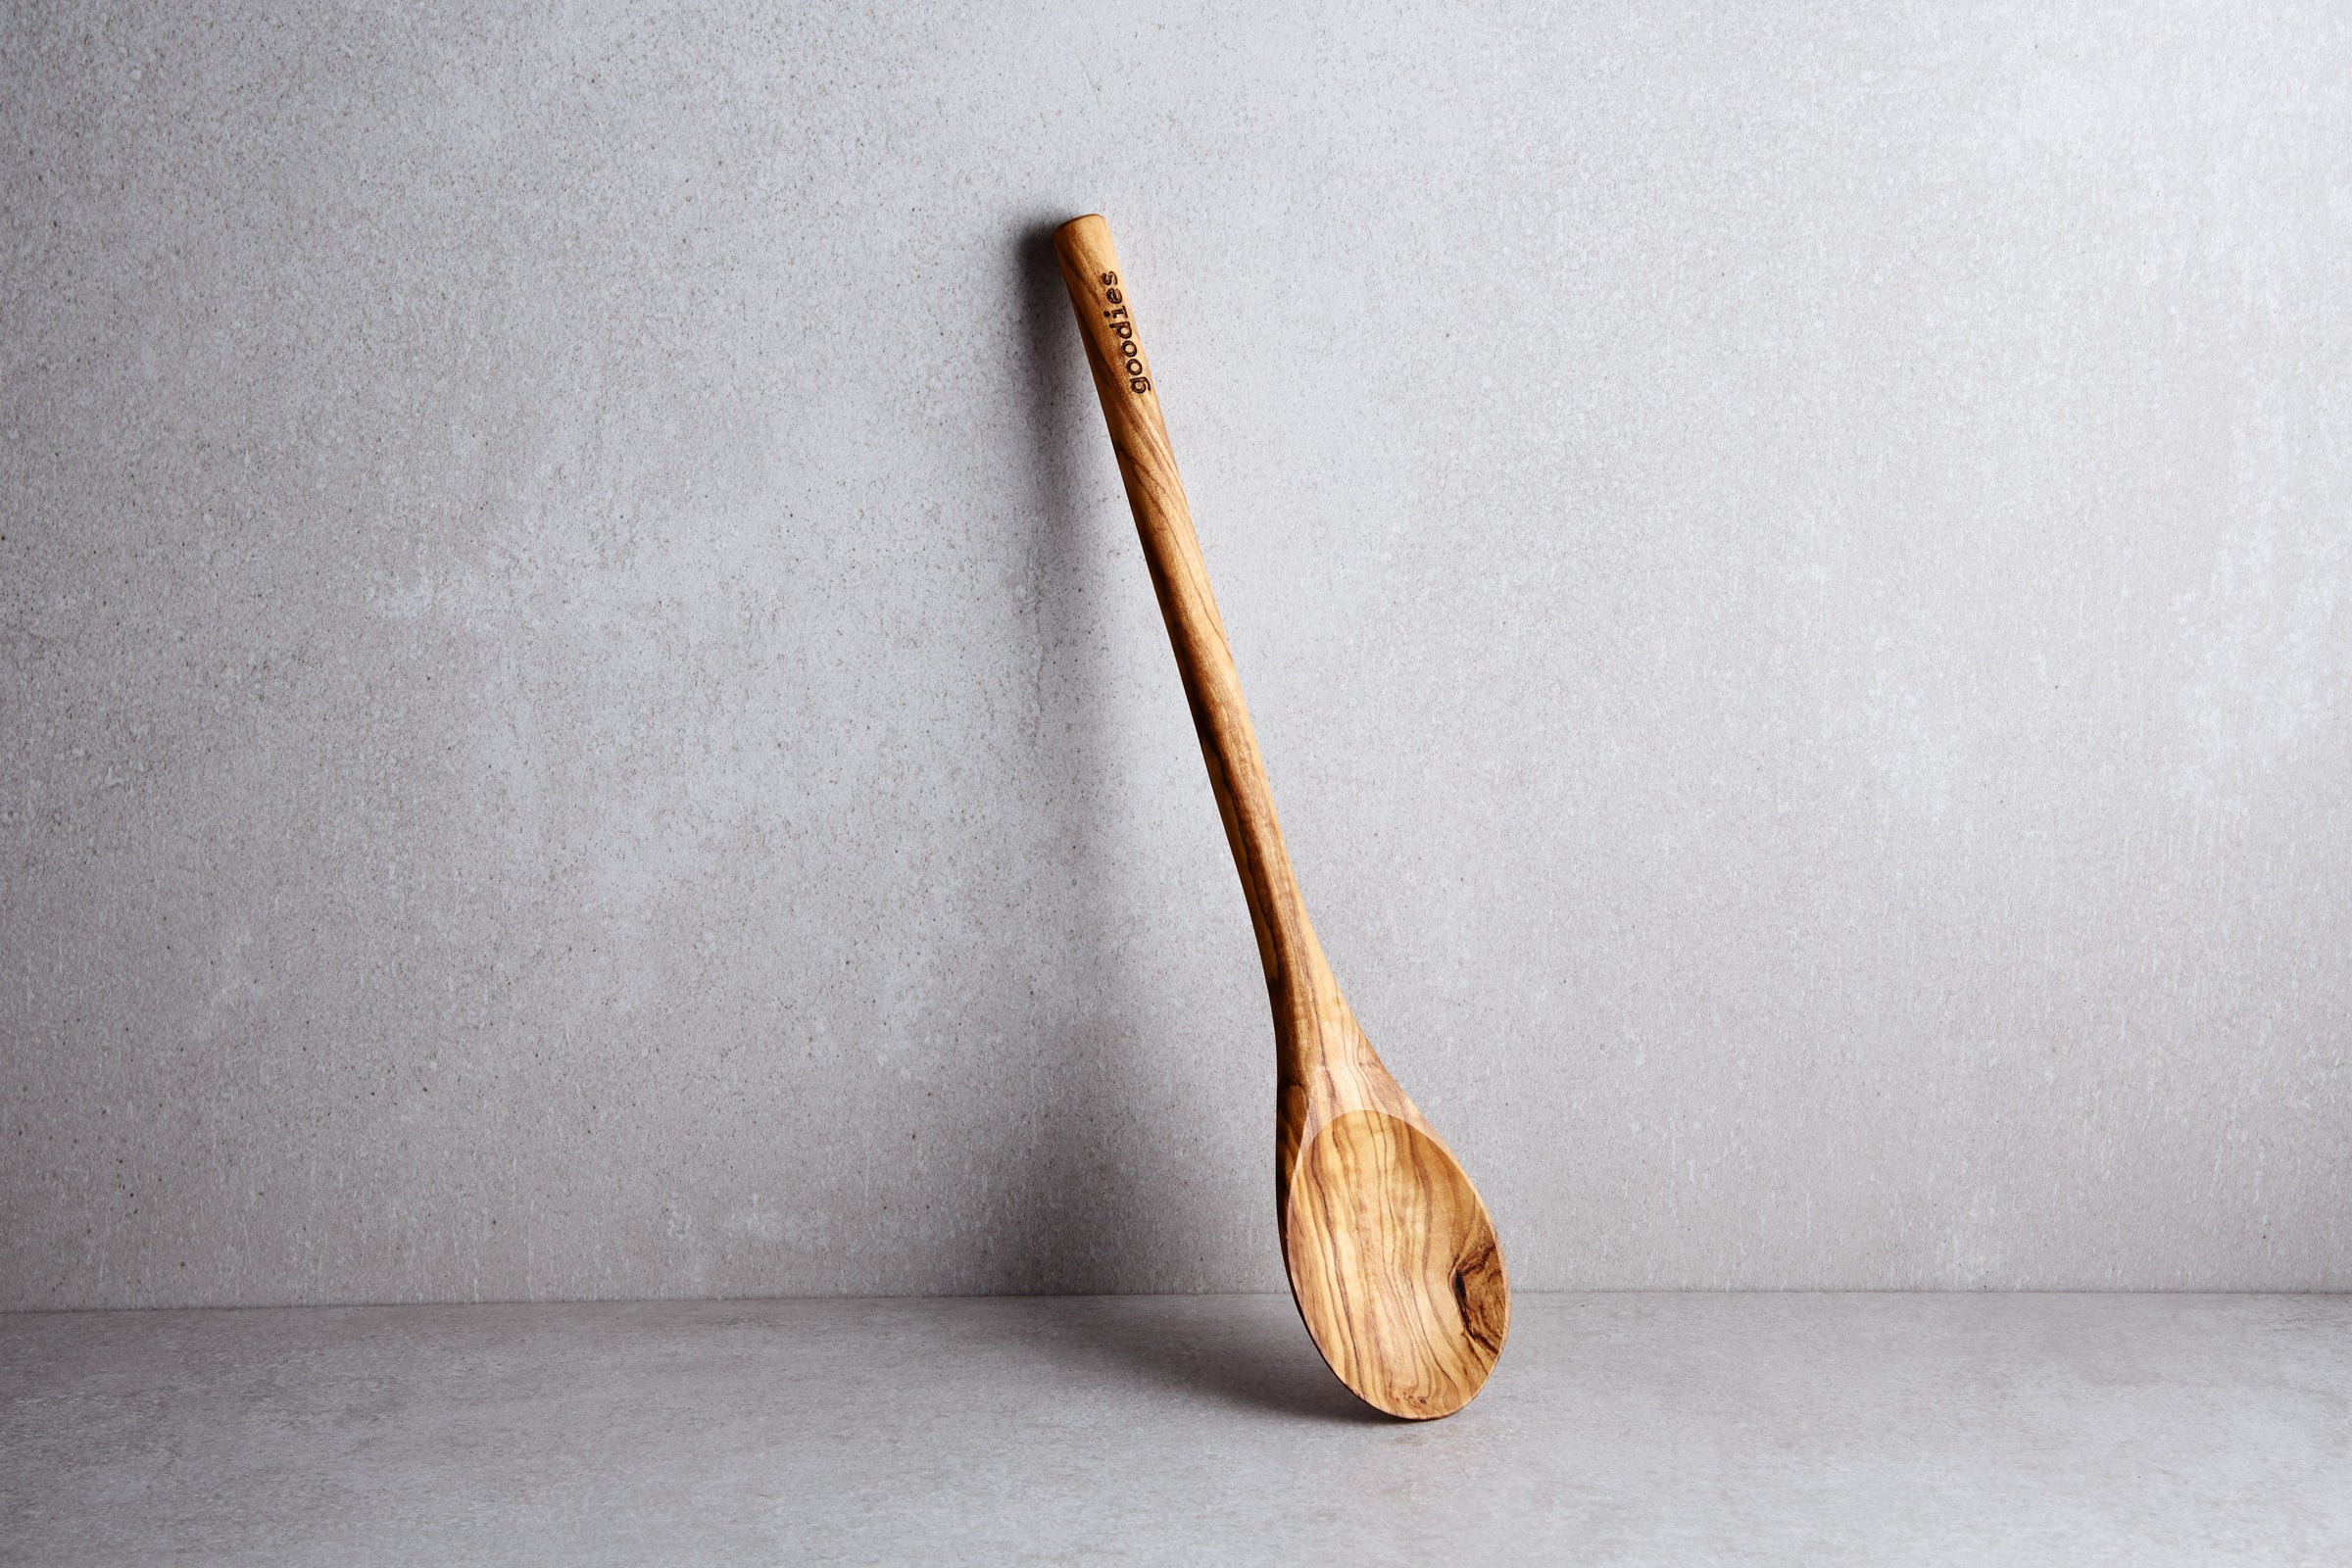 Wooden spoon - Wikipedia